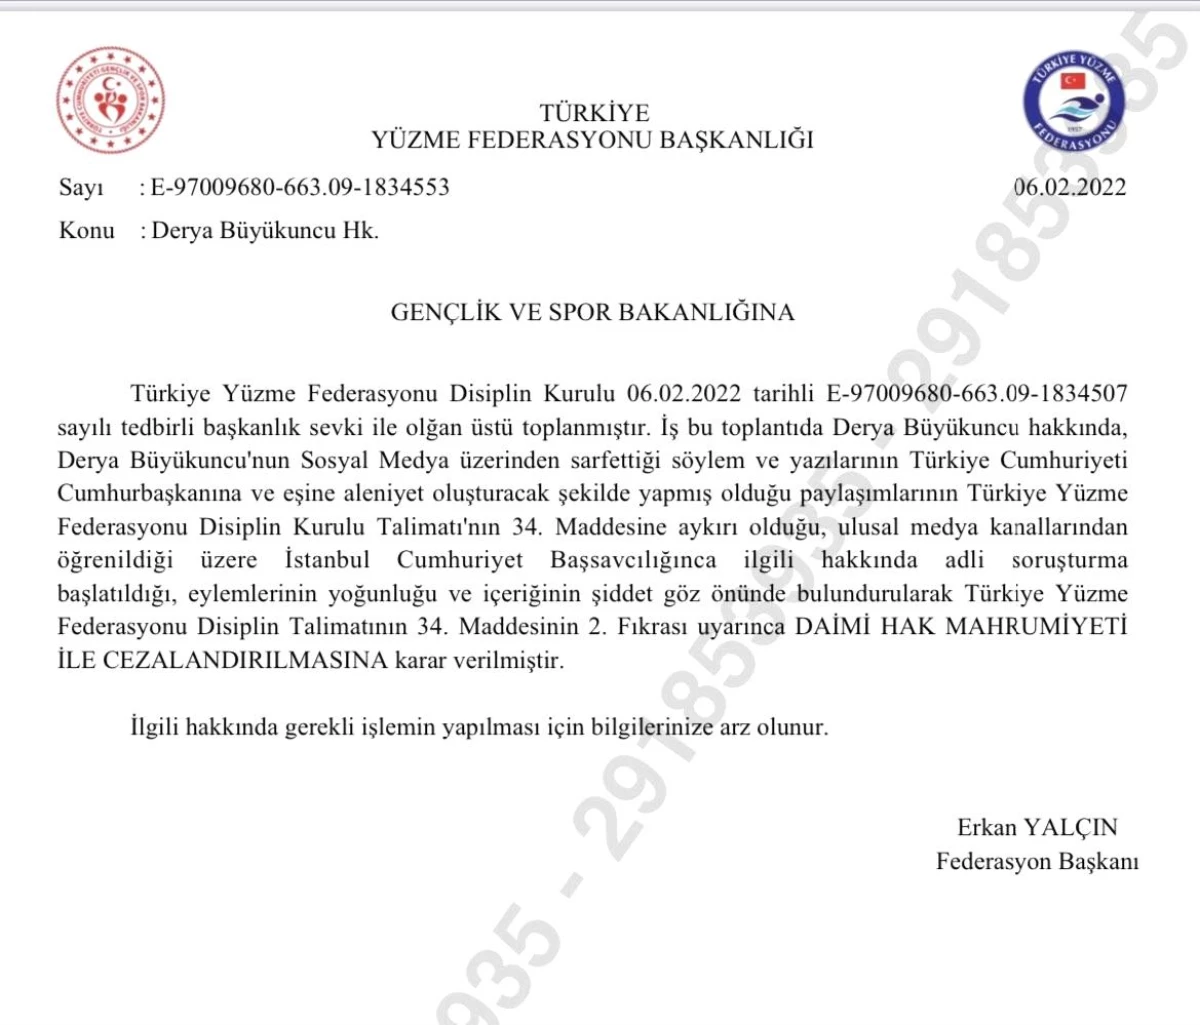 Türkiye Yüzme Federasyonu\'ndan, Derya Büyükuncu\'ya daimi hak mahrumiyeti